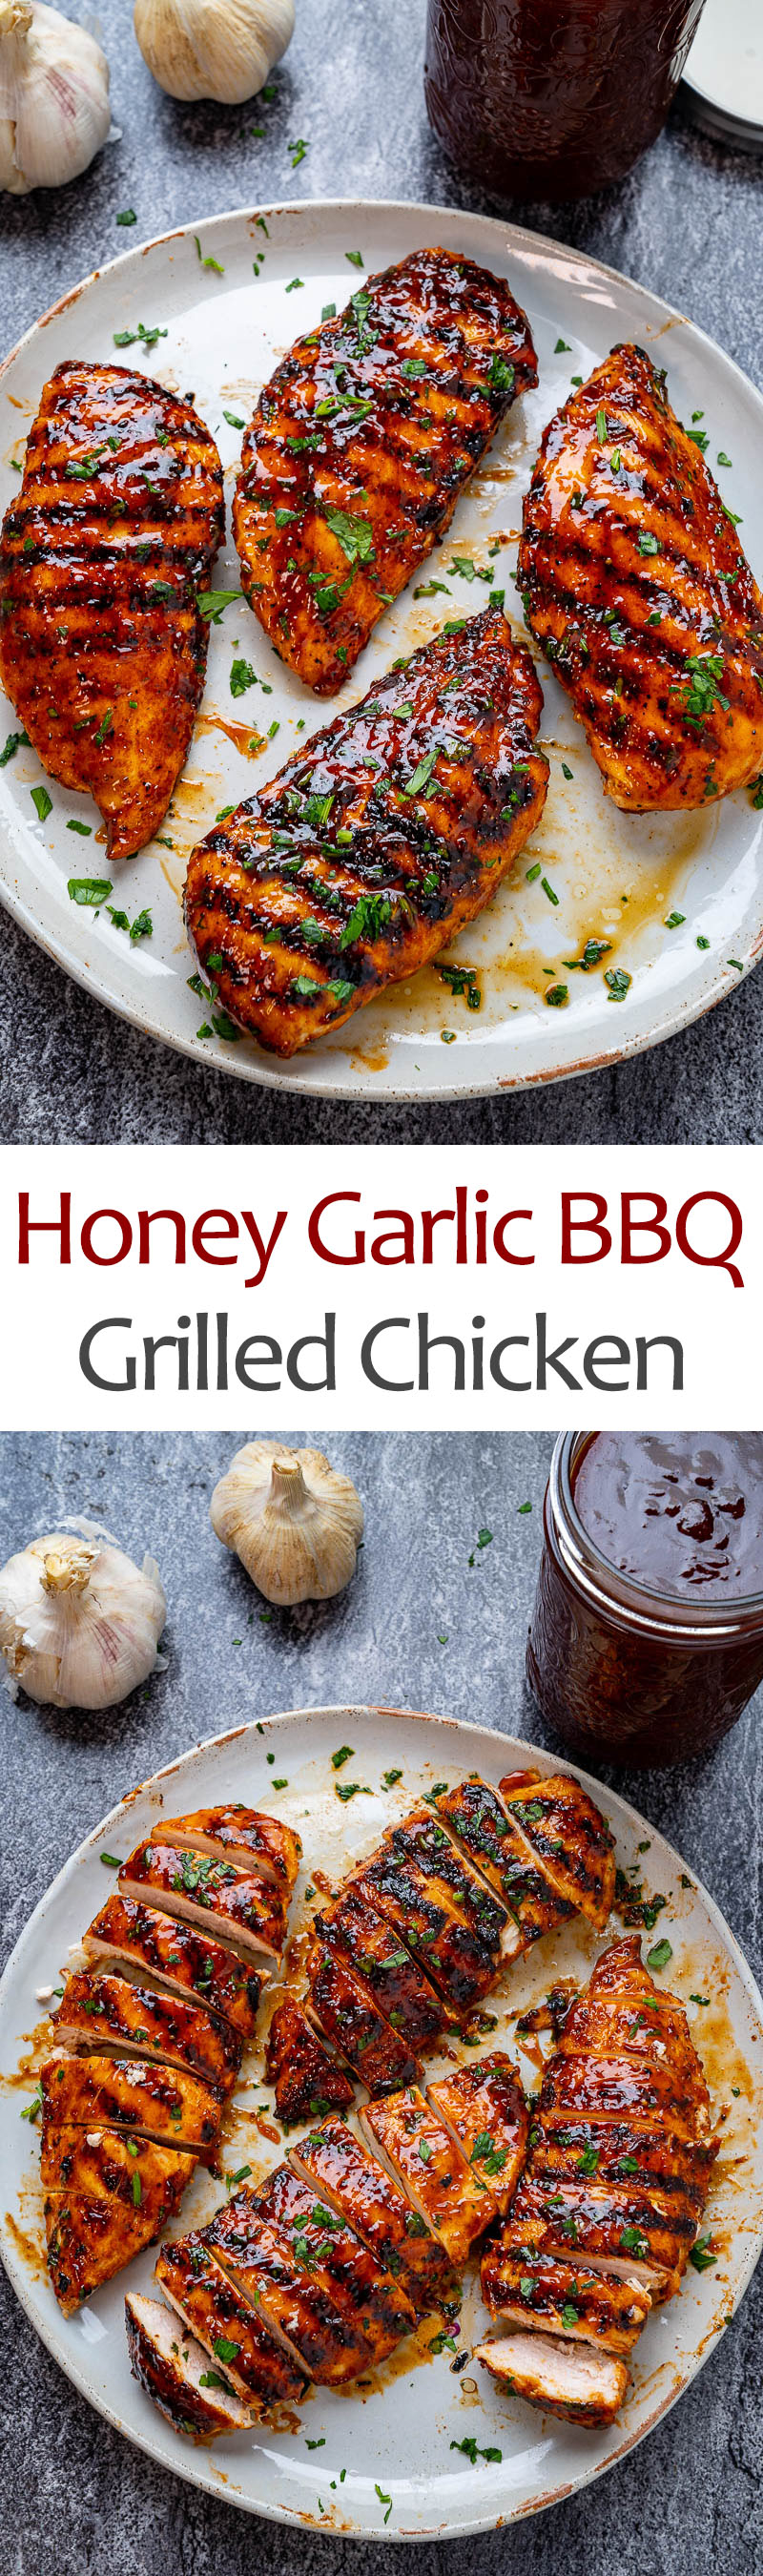 Honey Garlic BBQ Grilled Chicken